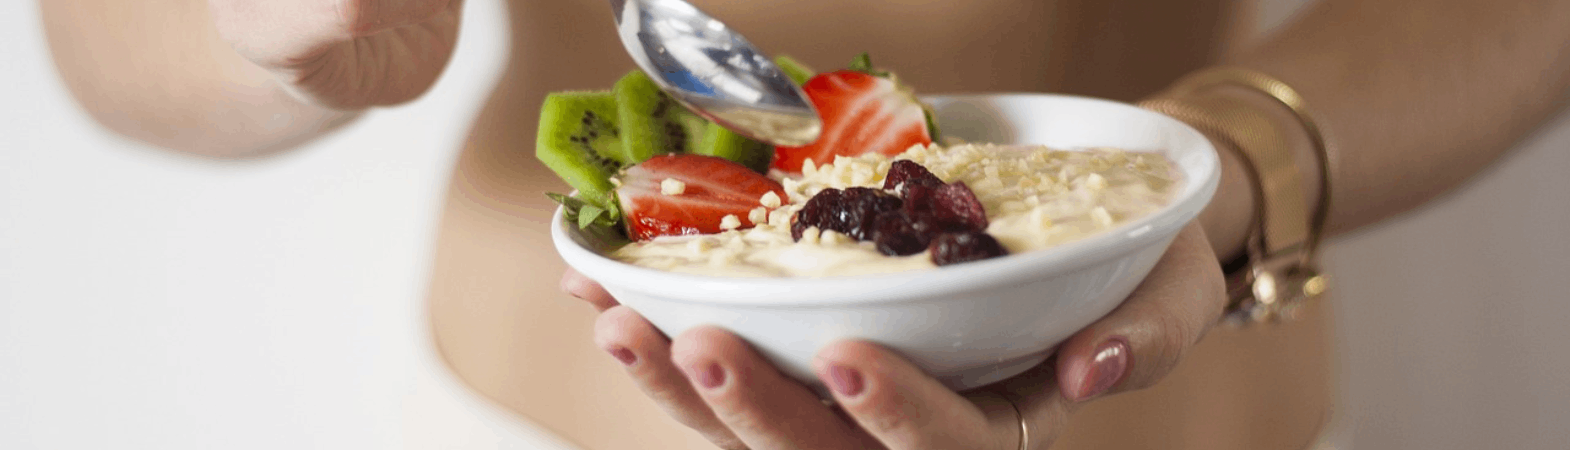 Podstawy zdrowej diety wątrobowej: co jeść a czego unikać?